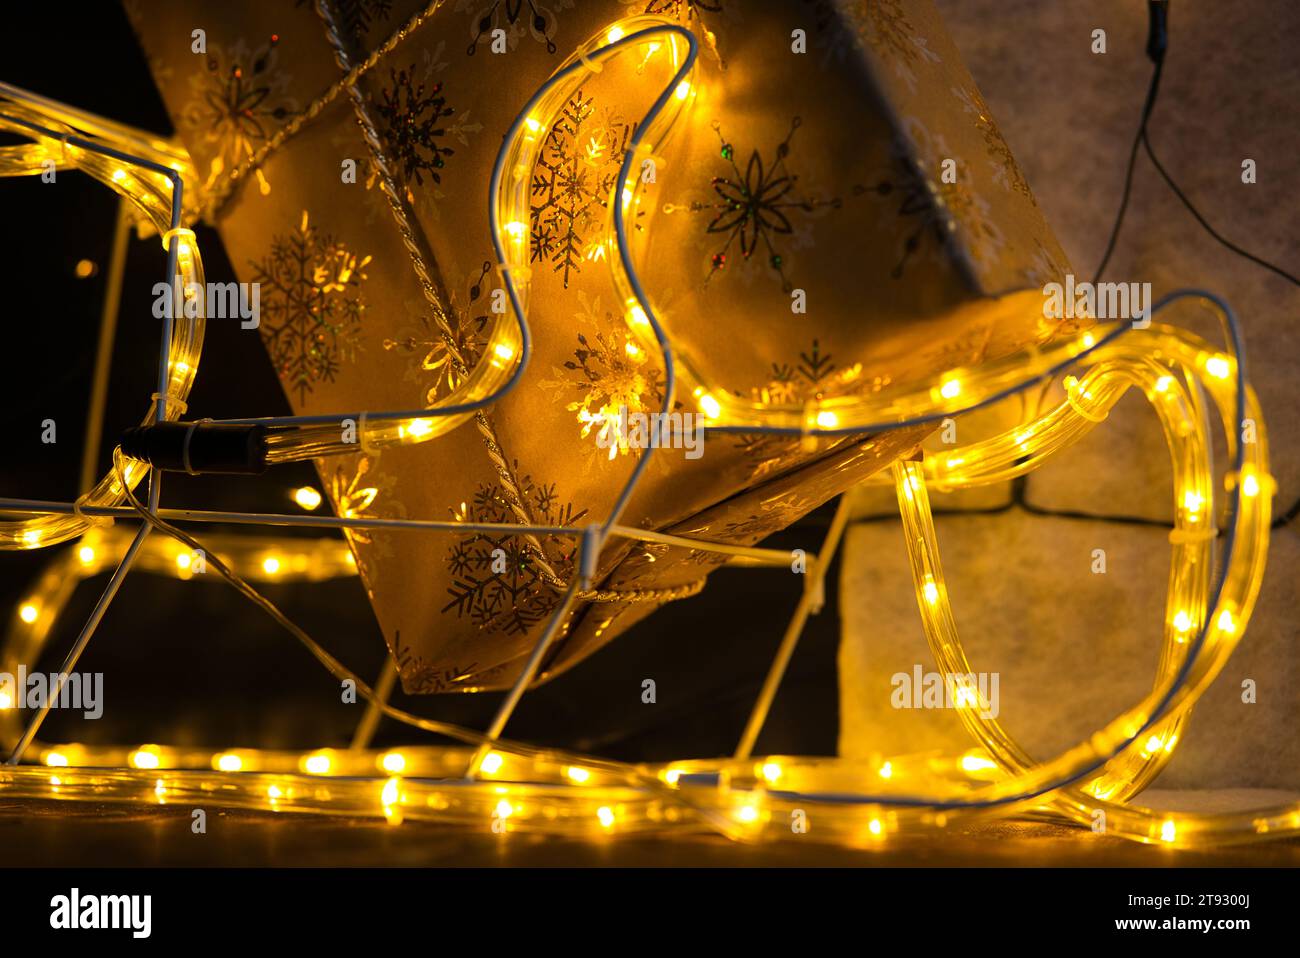 Tuffati nello spirito natalizio con un primo piano di un regalo di Natale avvolto in carta dorata adornata da scintillanti fiocchi di neve. L'angolo inferiore del gif Foto Stock